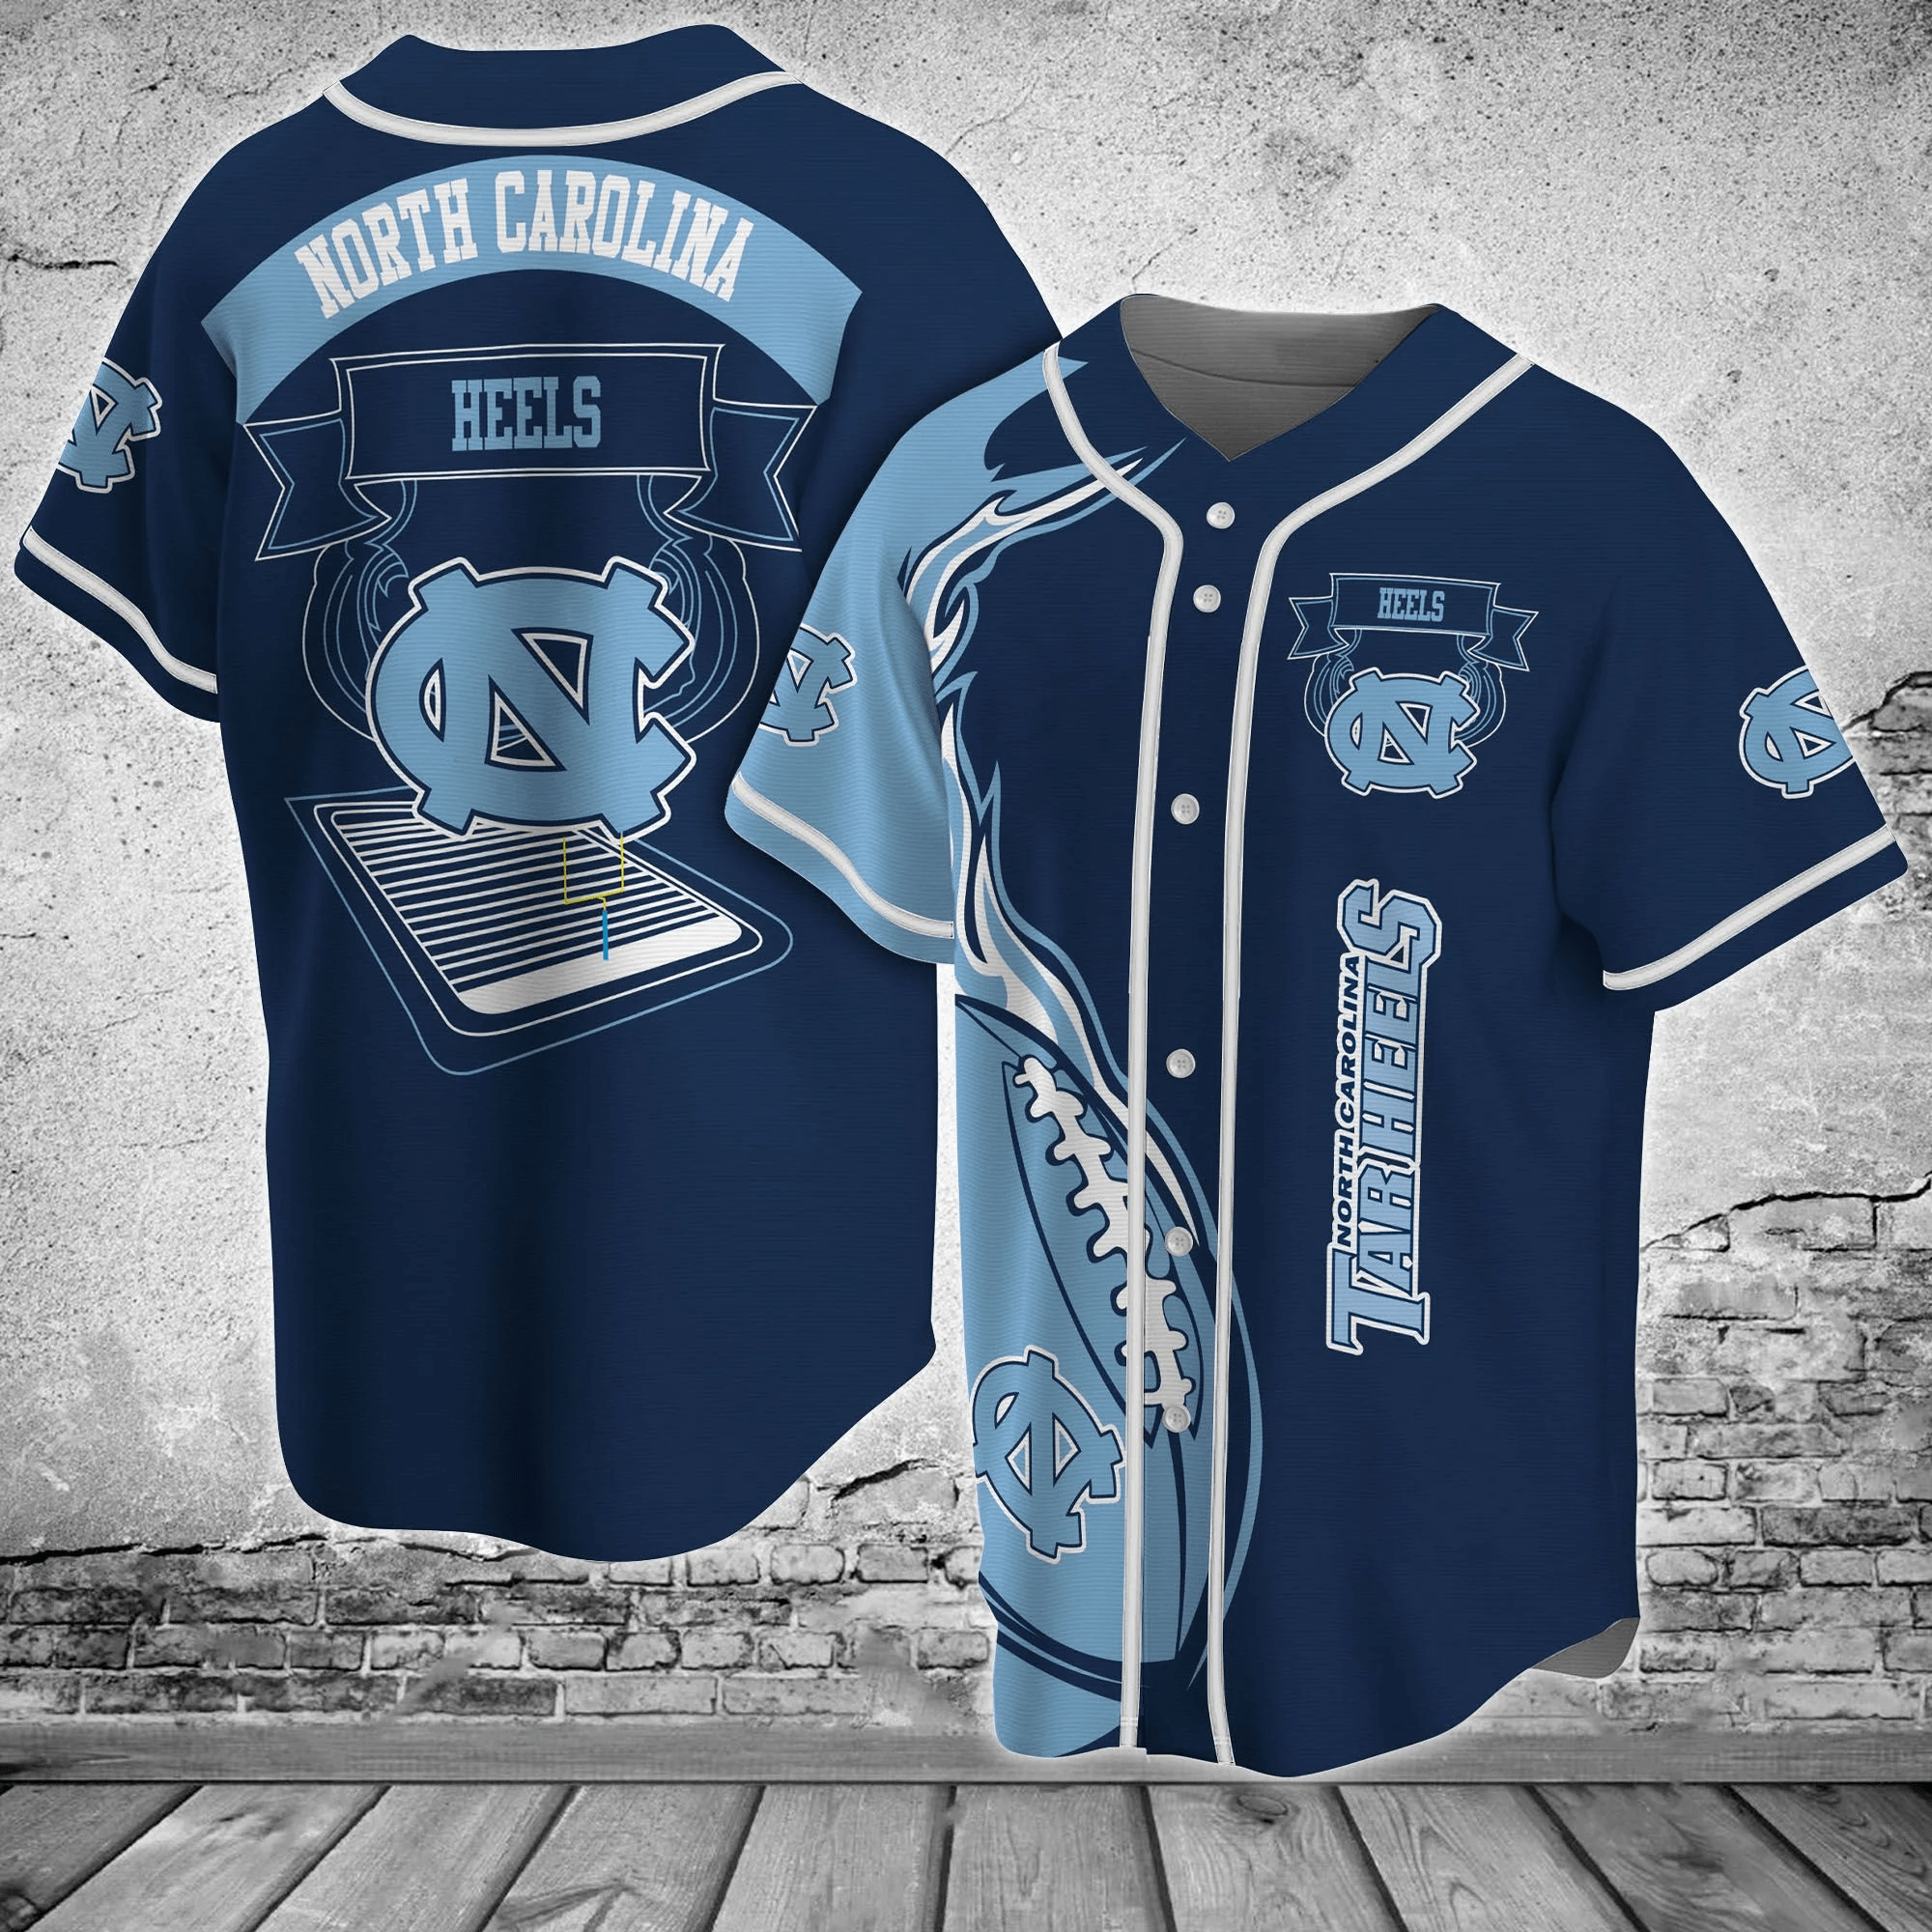 North Carolina Tar Heels Baseball Jersey Shirt - Perfect Gift for Fans